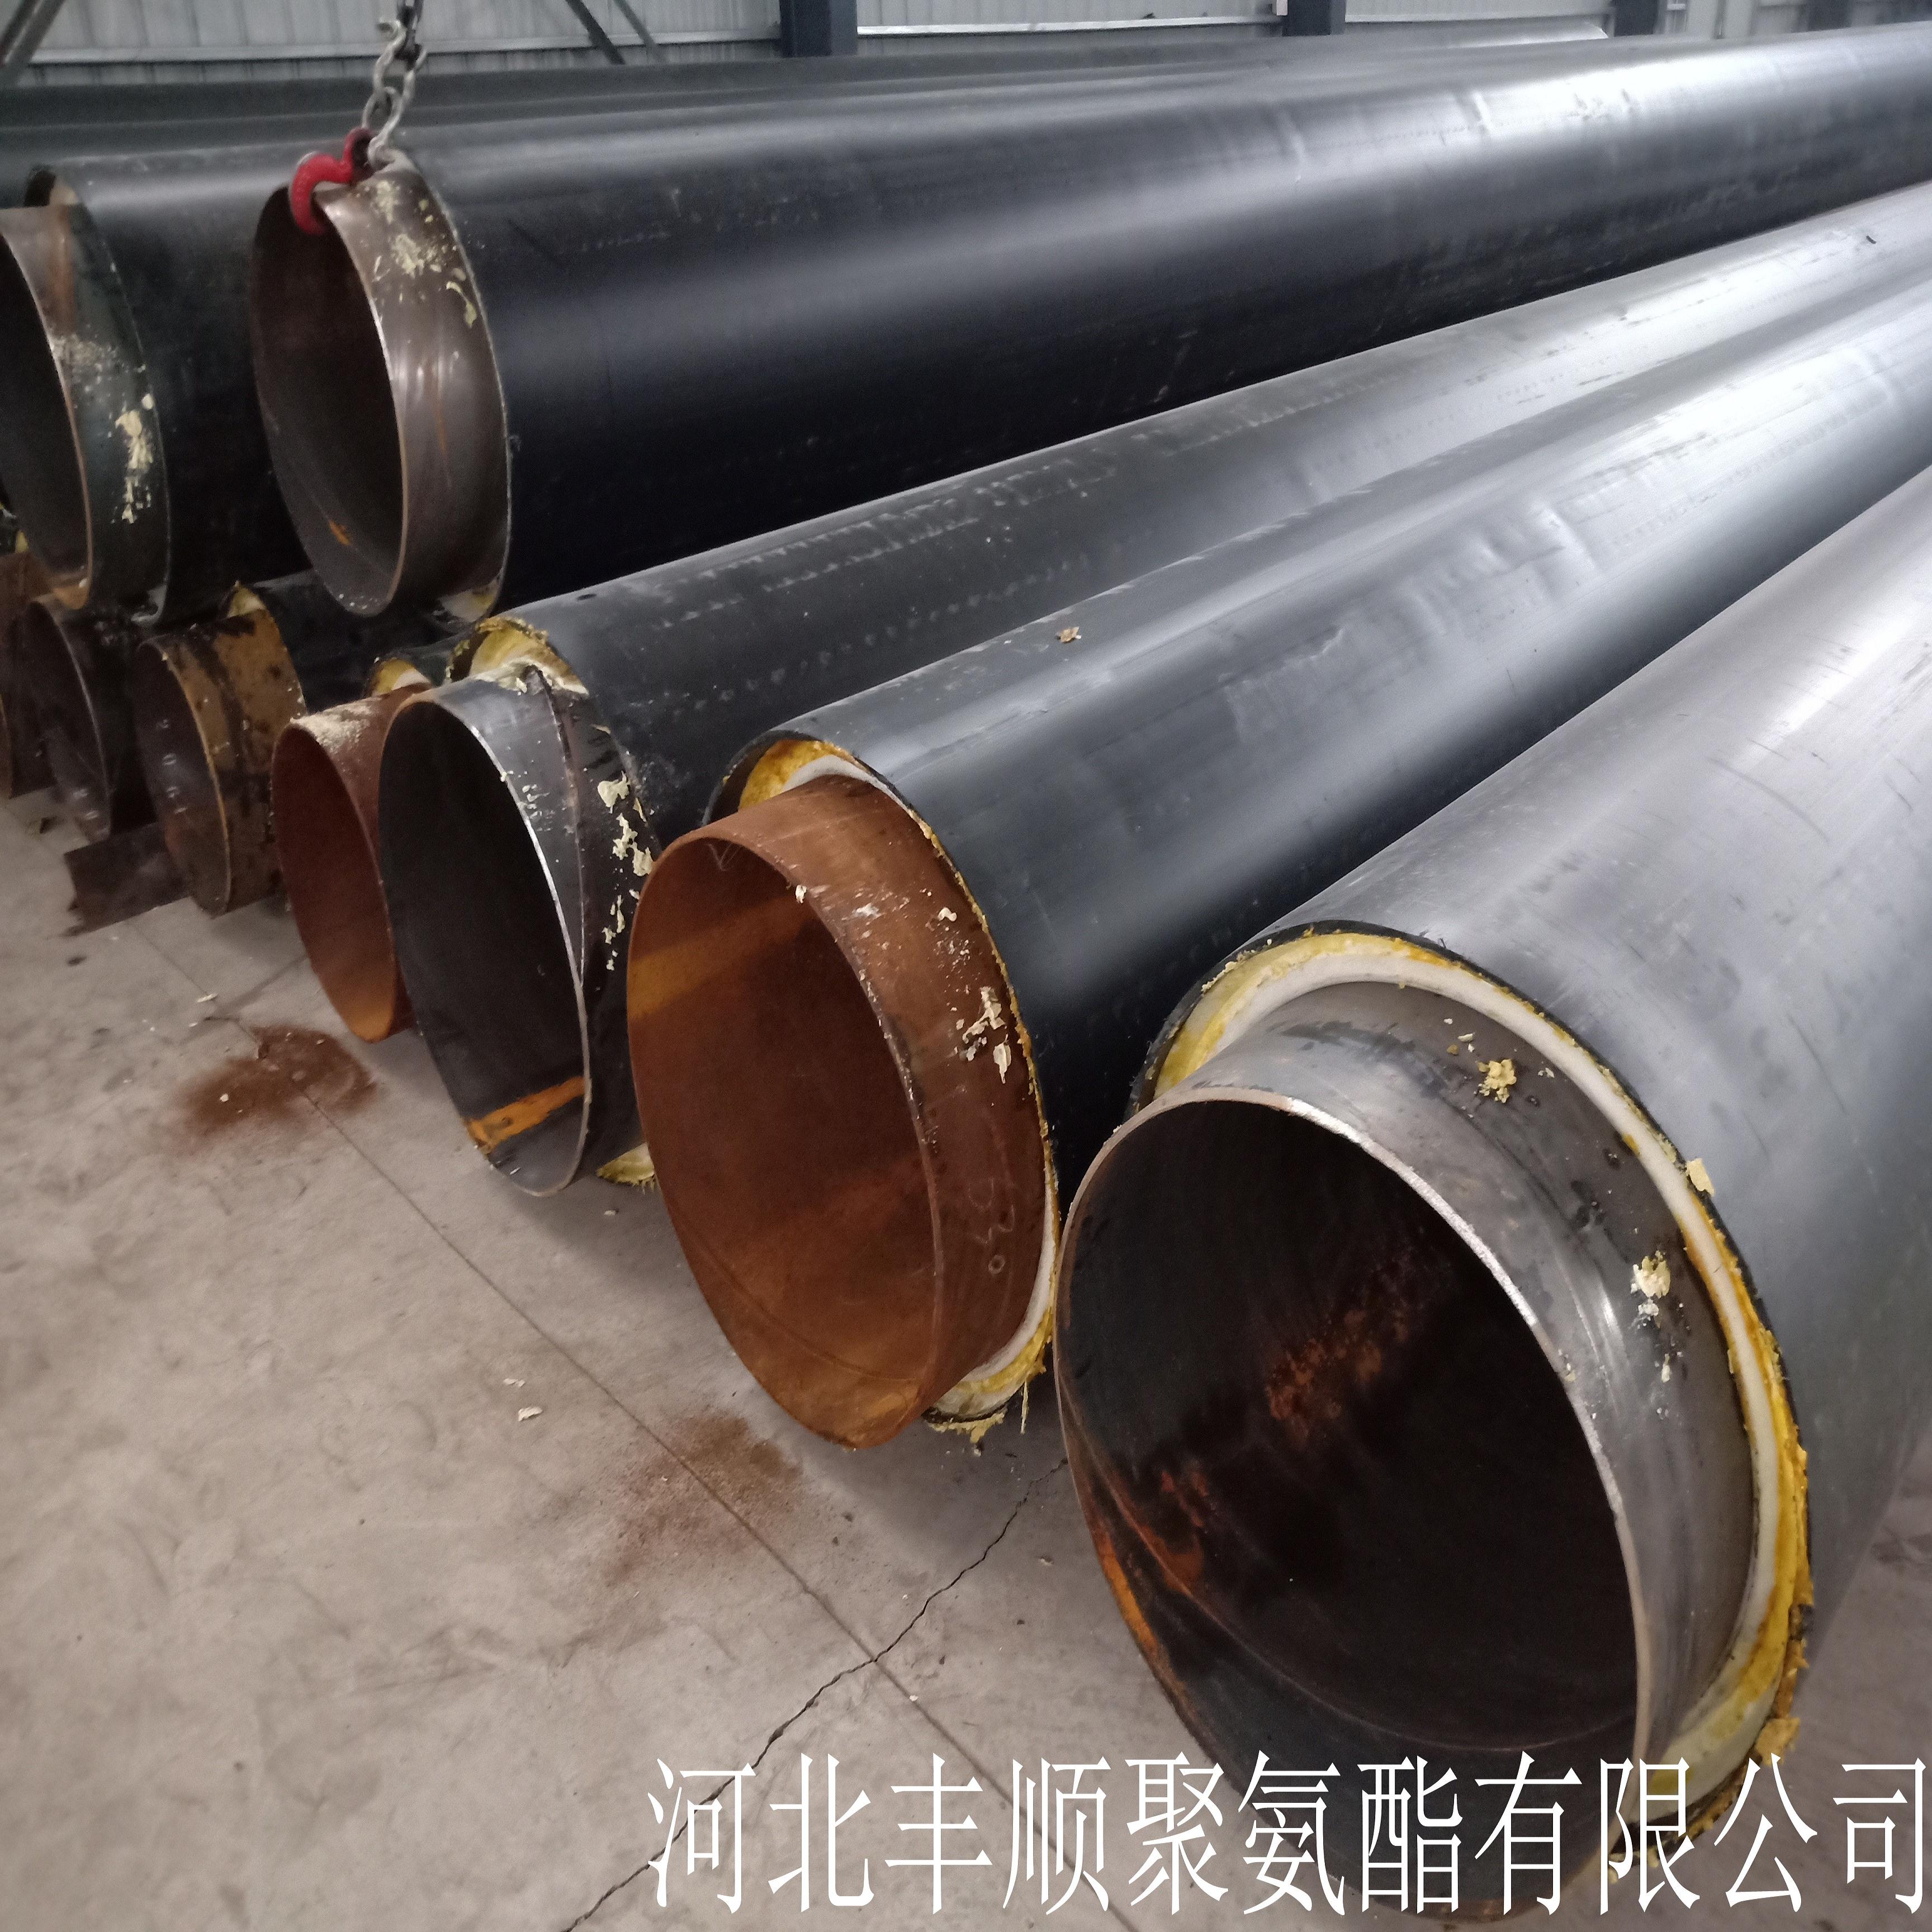 生产聚氨酯热水保温管 天津北辰DN100聚氨酯保温管厂家5